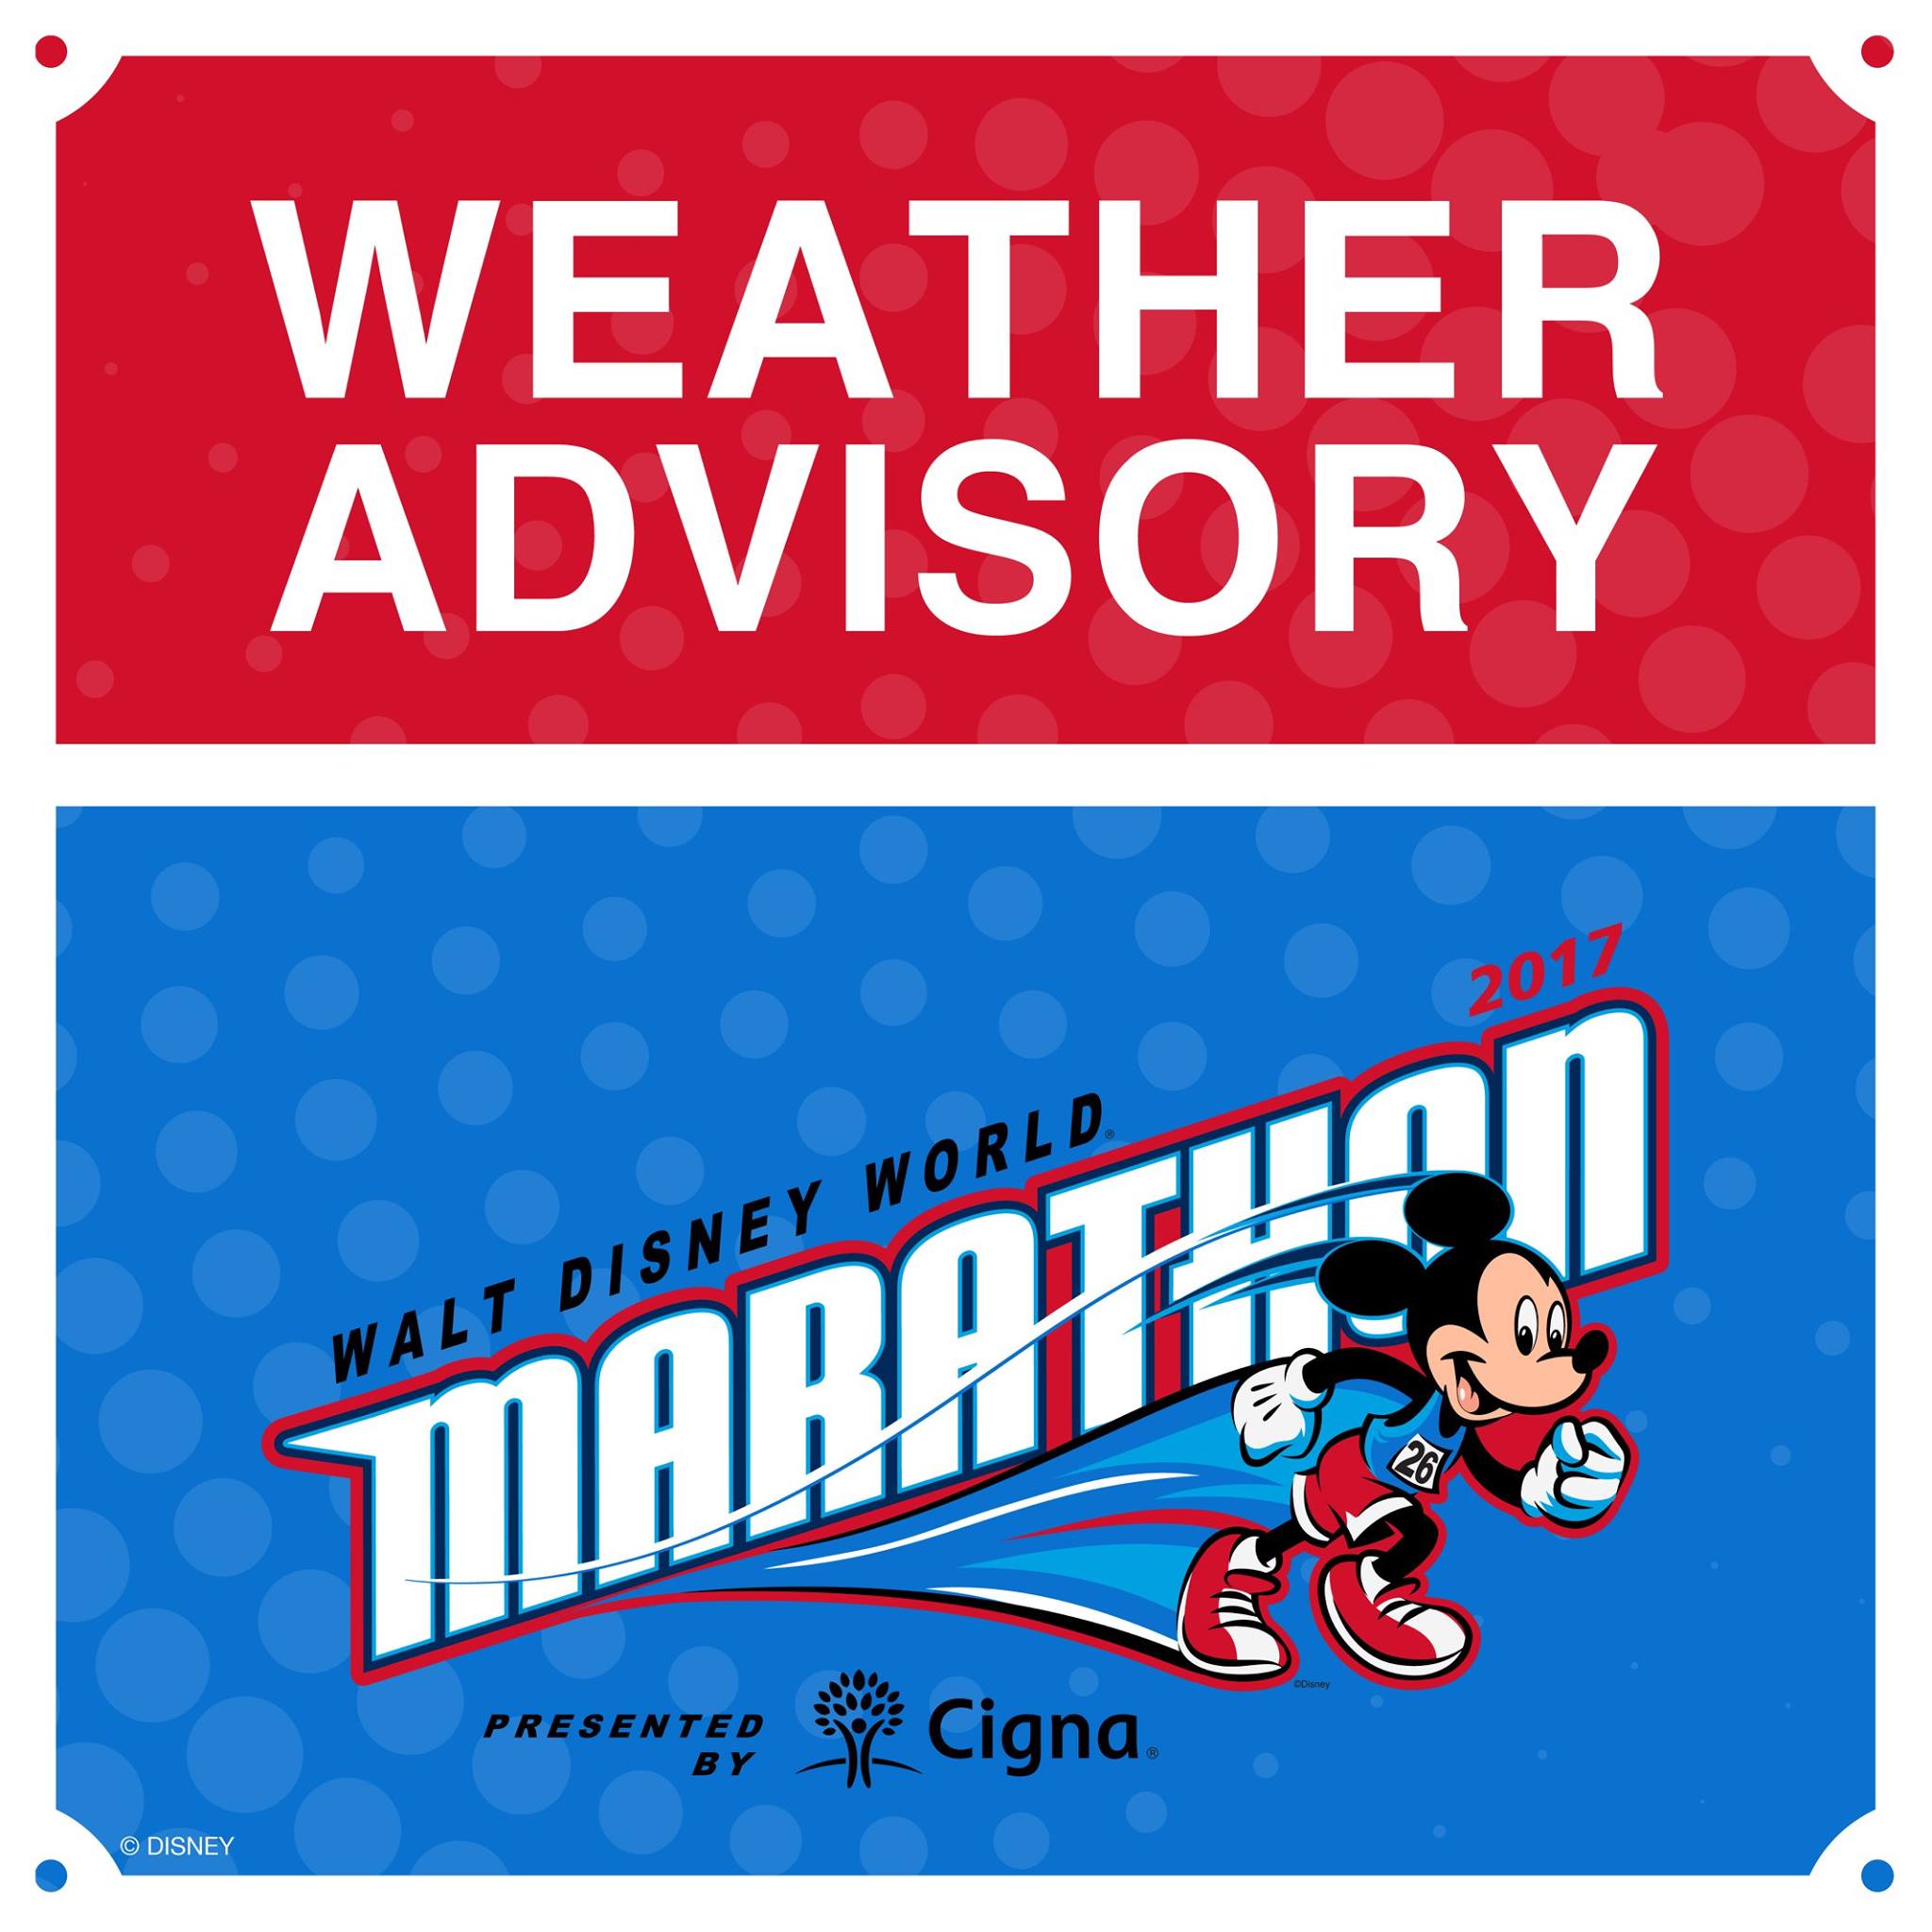 Weather advisory issued for Walt Disney World Marathon